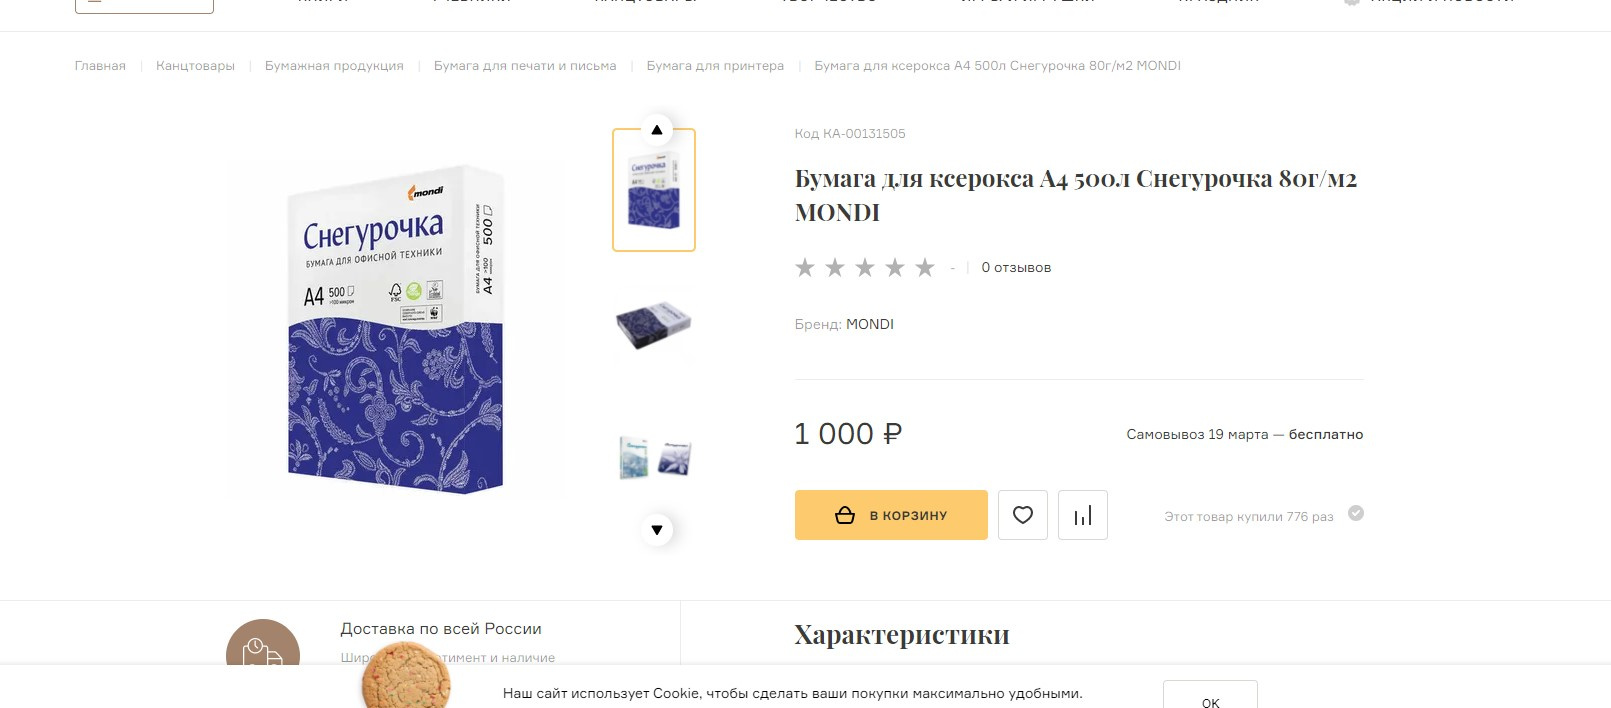 Цены на бумагу сейчас везде разные, они доходят до 1000 рублей